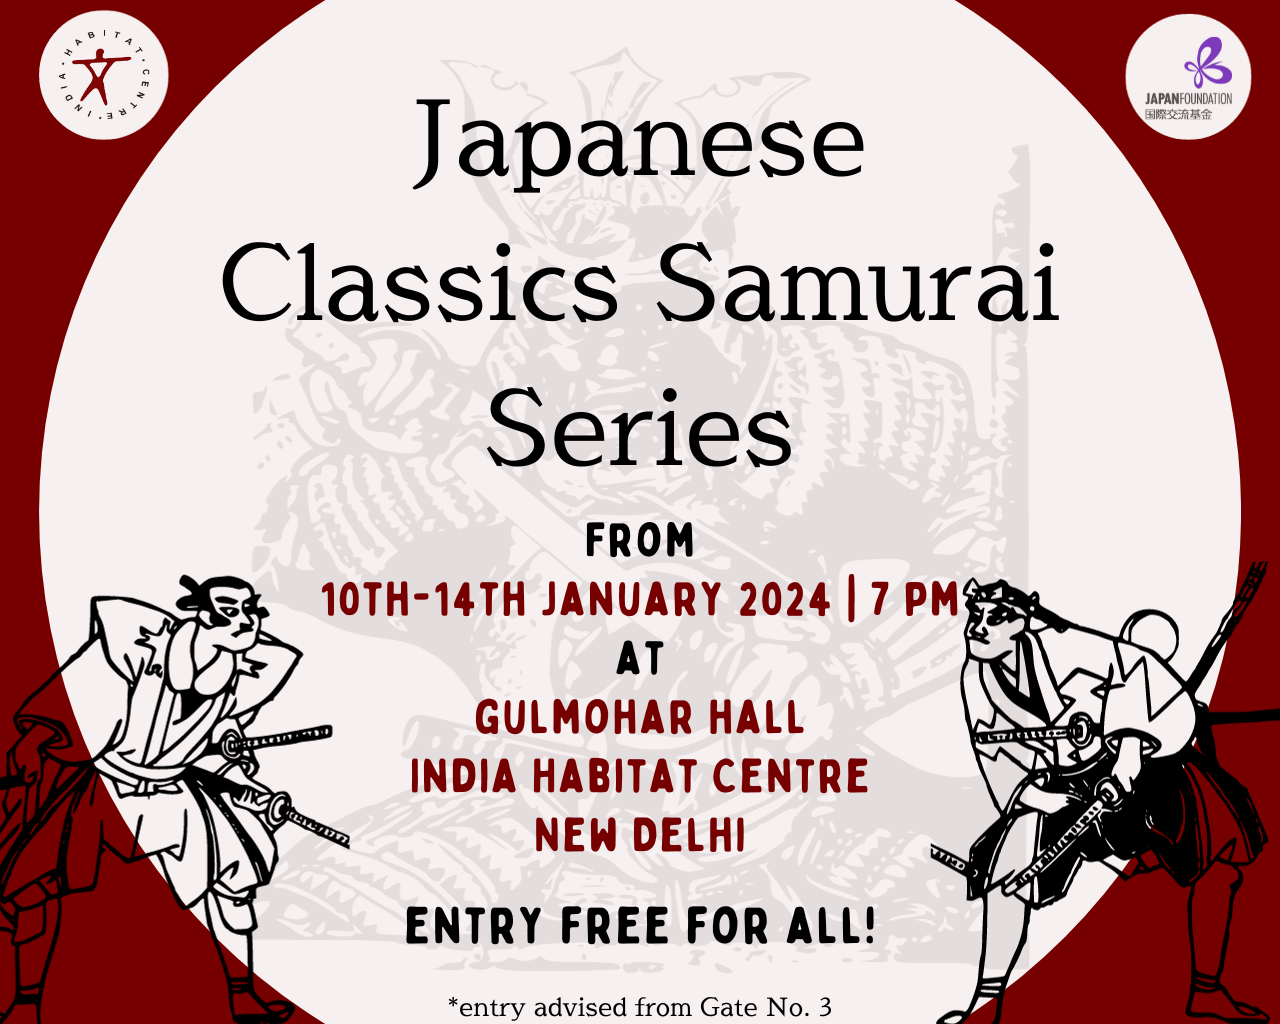 Japanese Classic Samurai Series